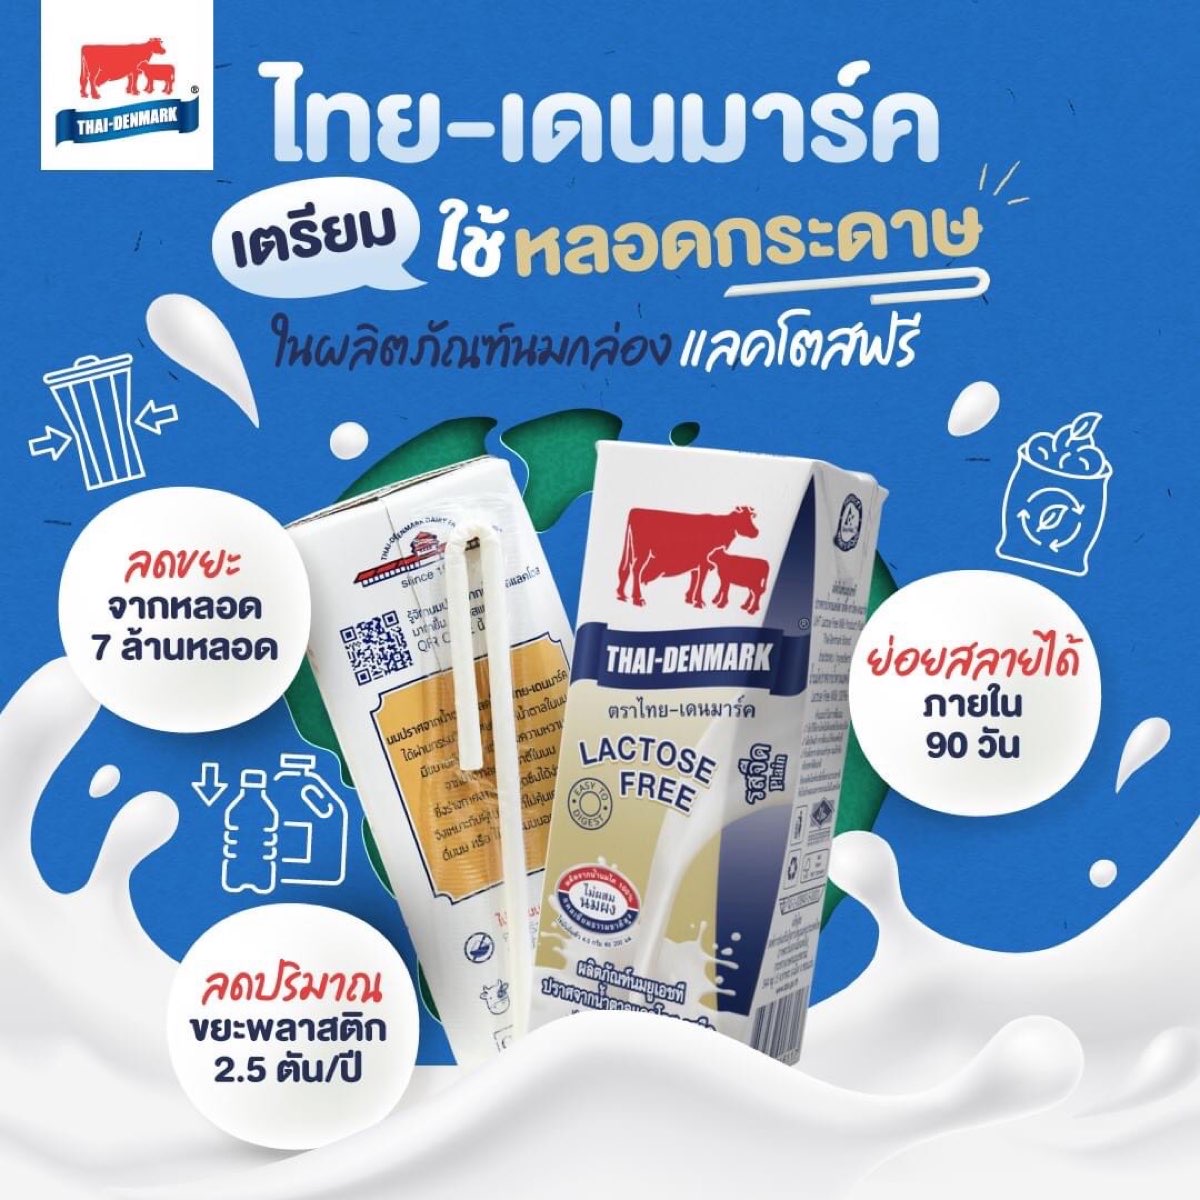  นมไทย-เดนมาร์ค ปราศจากน้ำตาลแลคโตส ขนาด 200 ml. บรรจุ 36 กล่อง